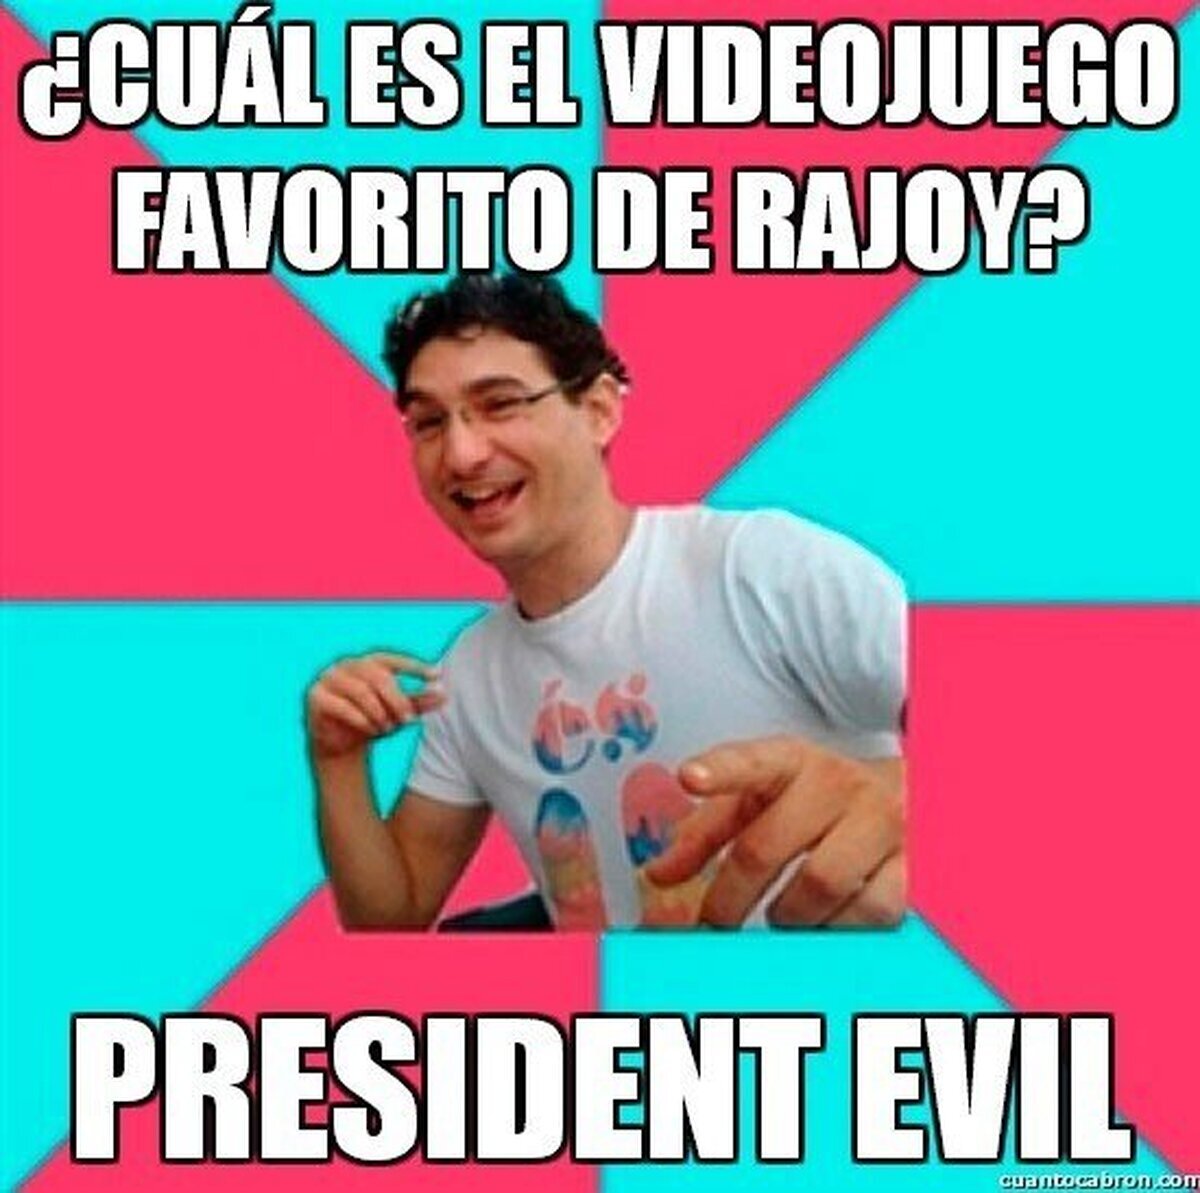 ¿Cuál es el videojuego favorito de Rajoy?